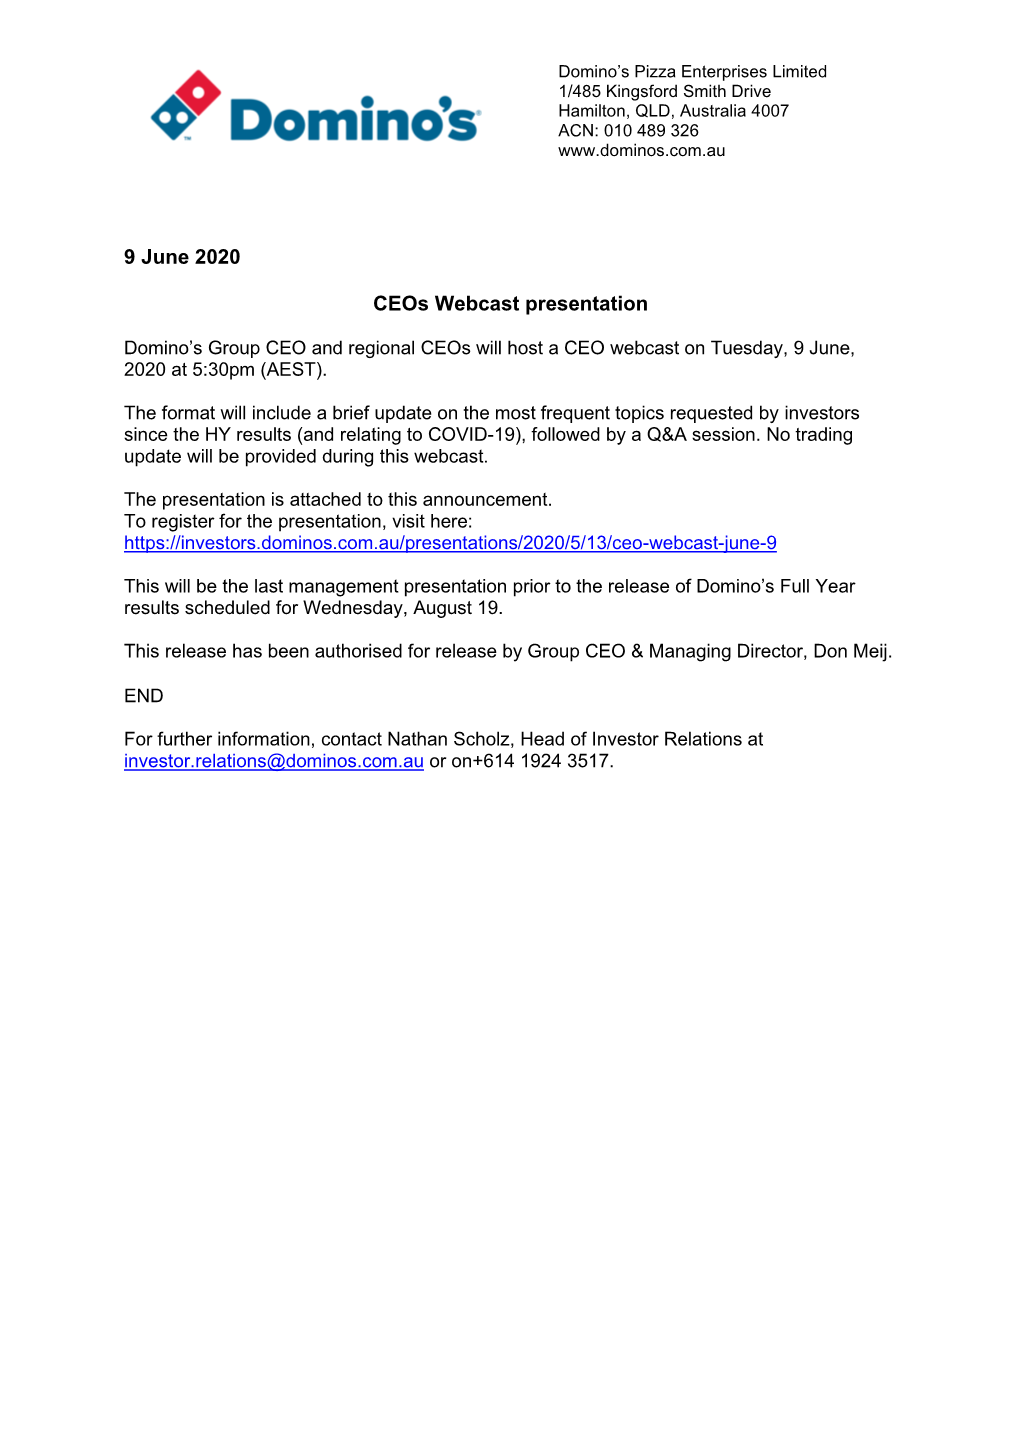 9 June 2020 Ceos Webcast Presentation